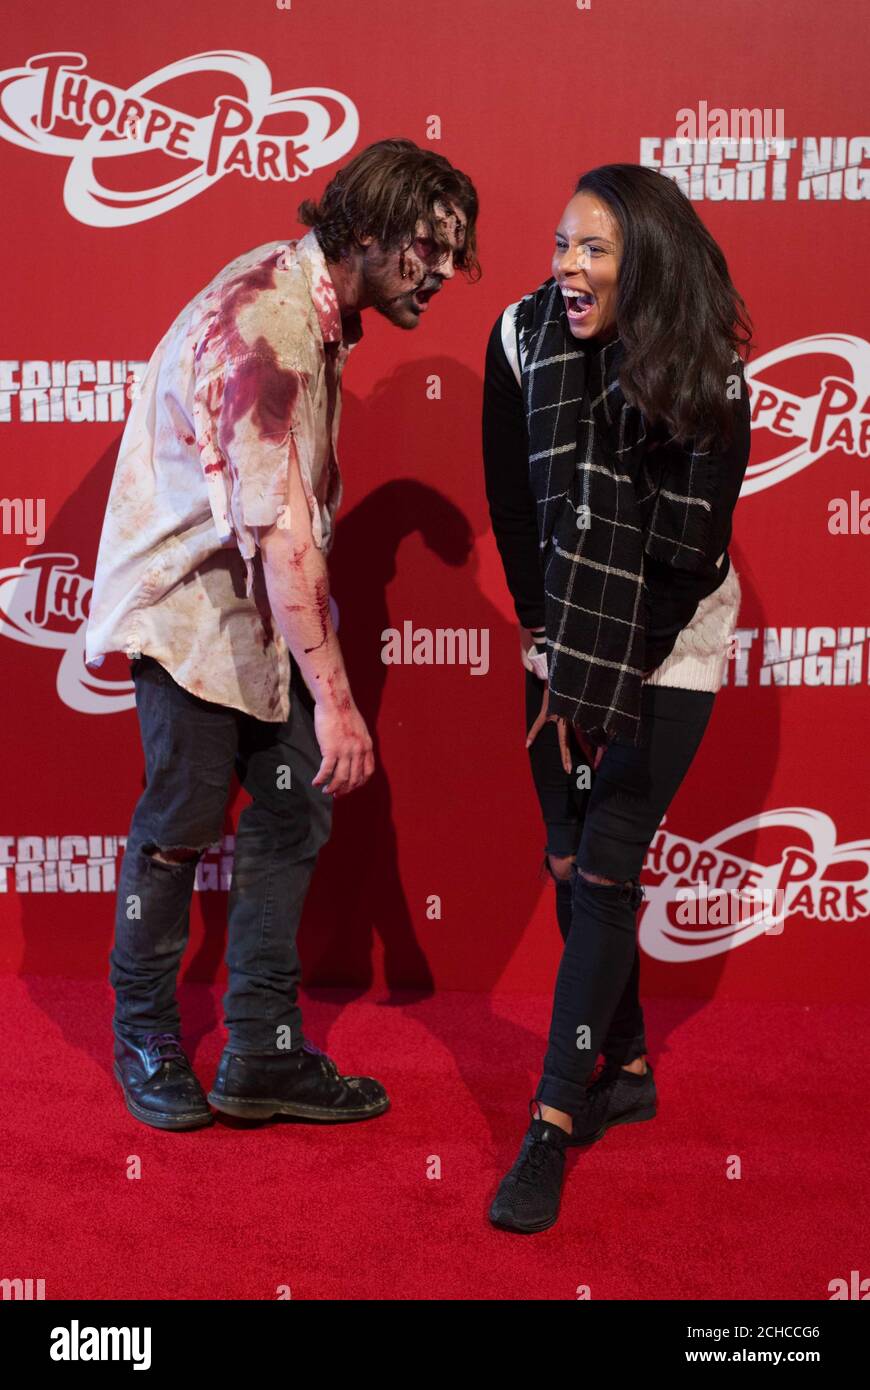 Louise Hazel interagiert mit „Zombies“ beim Start der jährlichen Fright Nights-Saison des THORPE PARK Resorts, die zwei neue Live-Action-Labyrinthe enthält, die von der Fernsehsendung The Walking Dead inspiriert wurden. Stockfoto